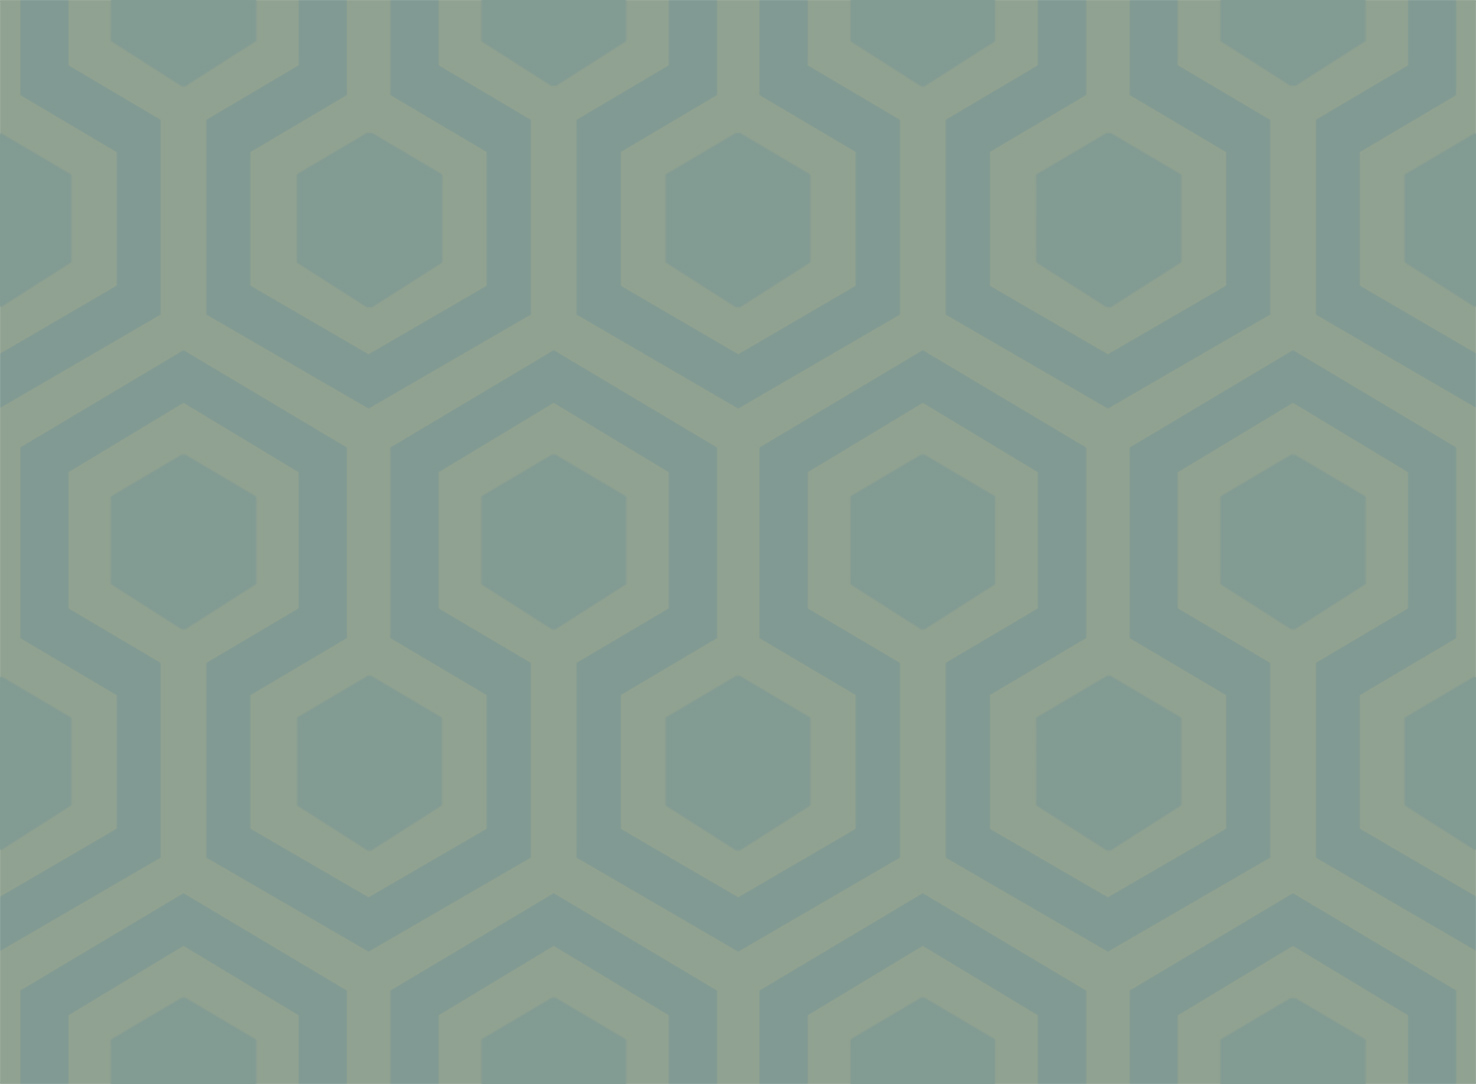 Hexagons_06